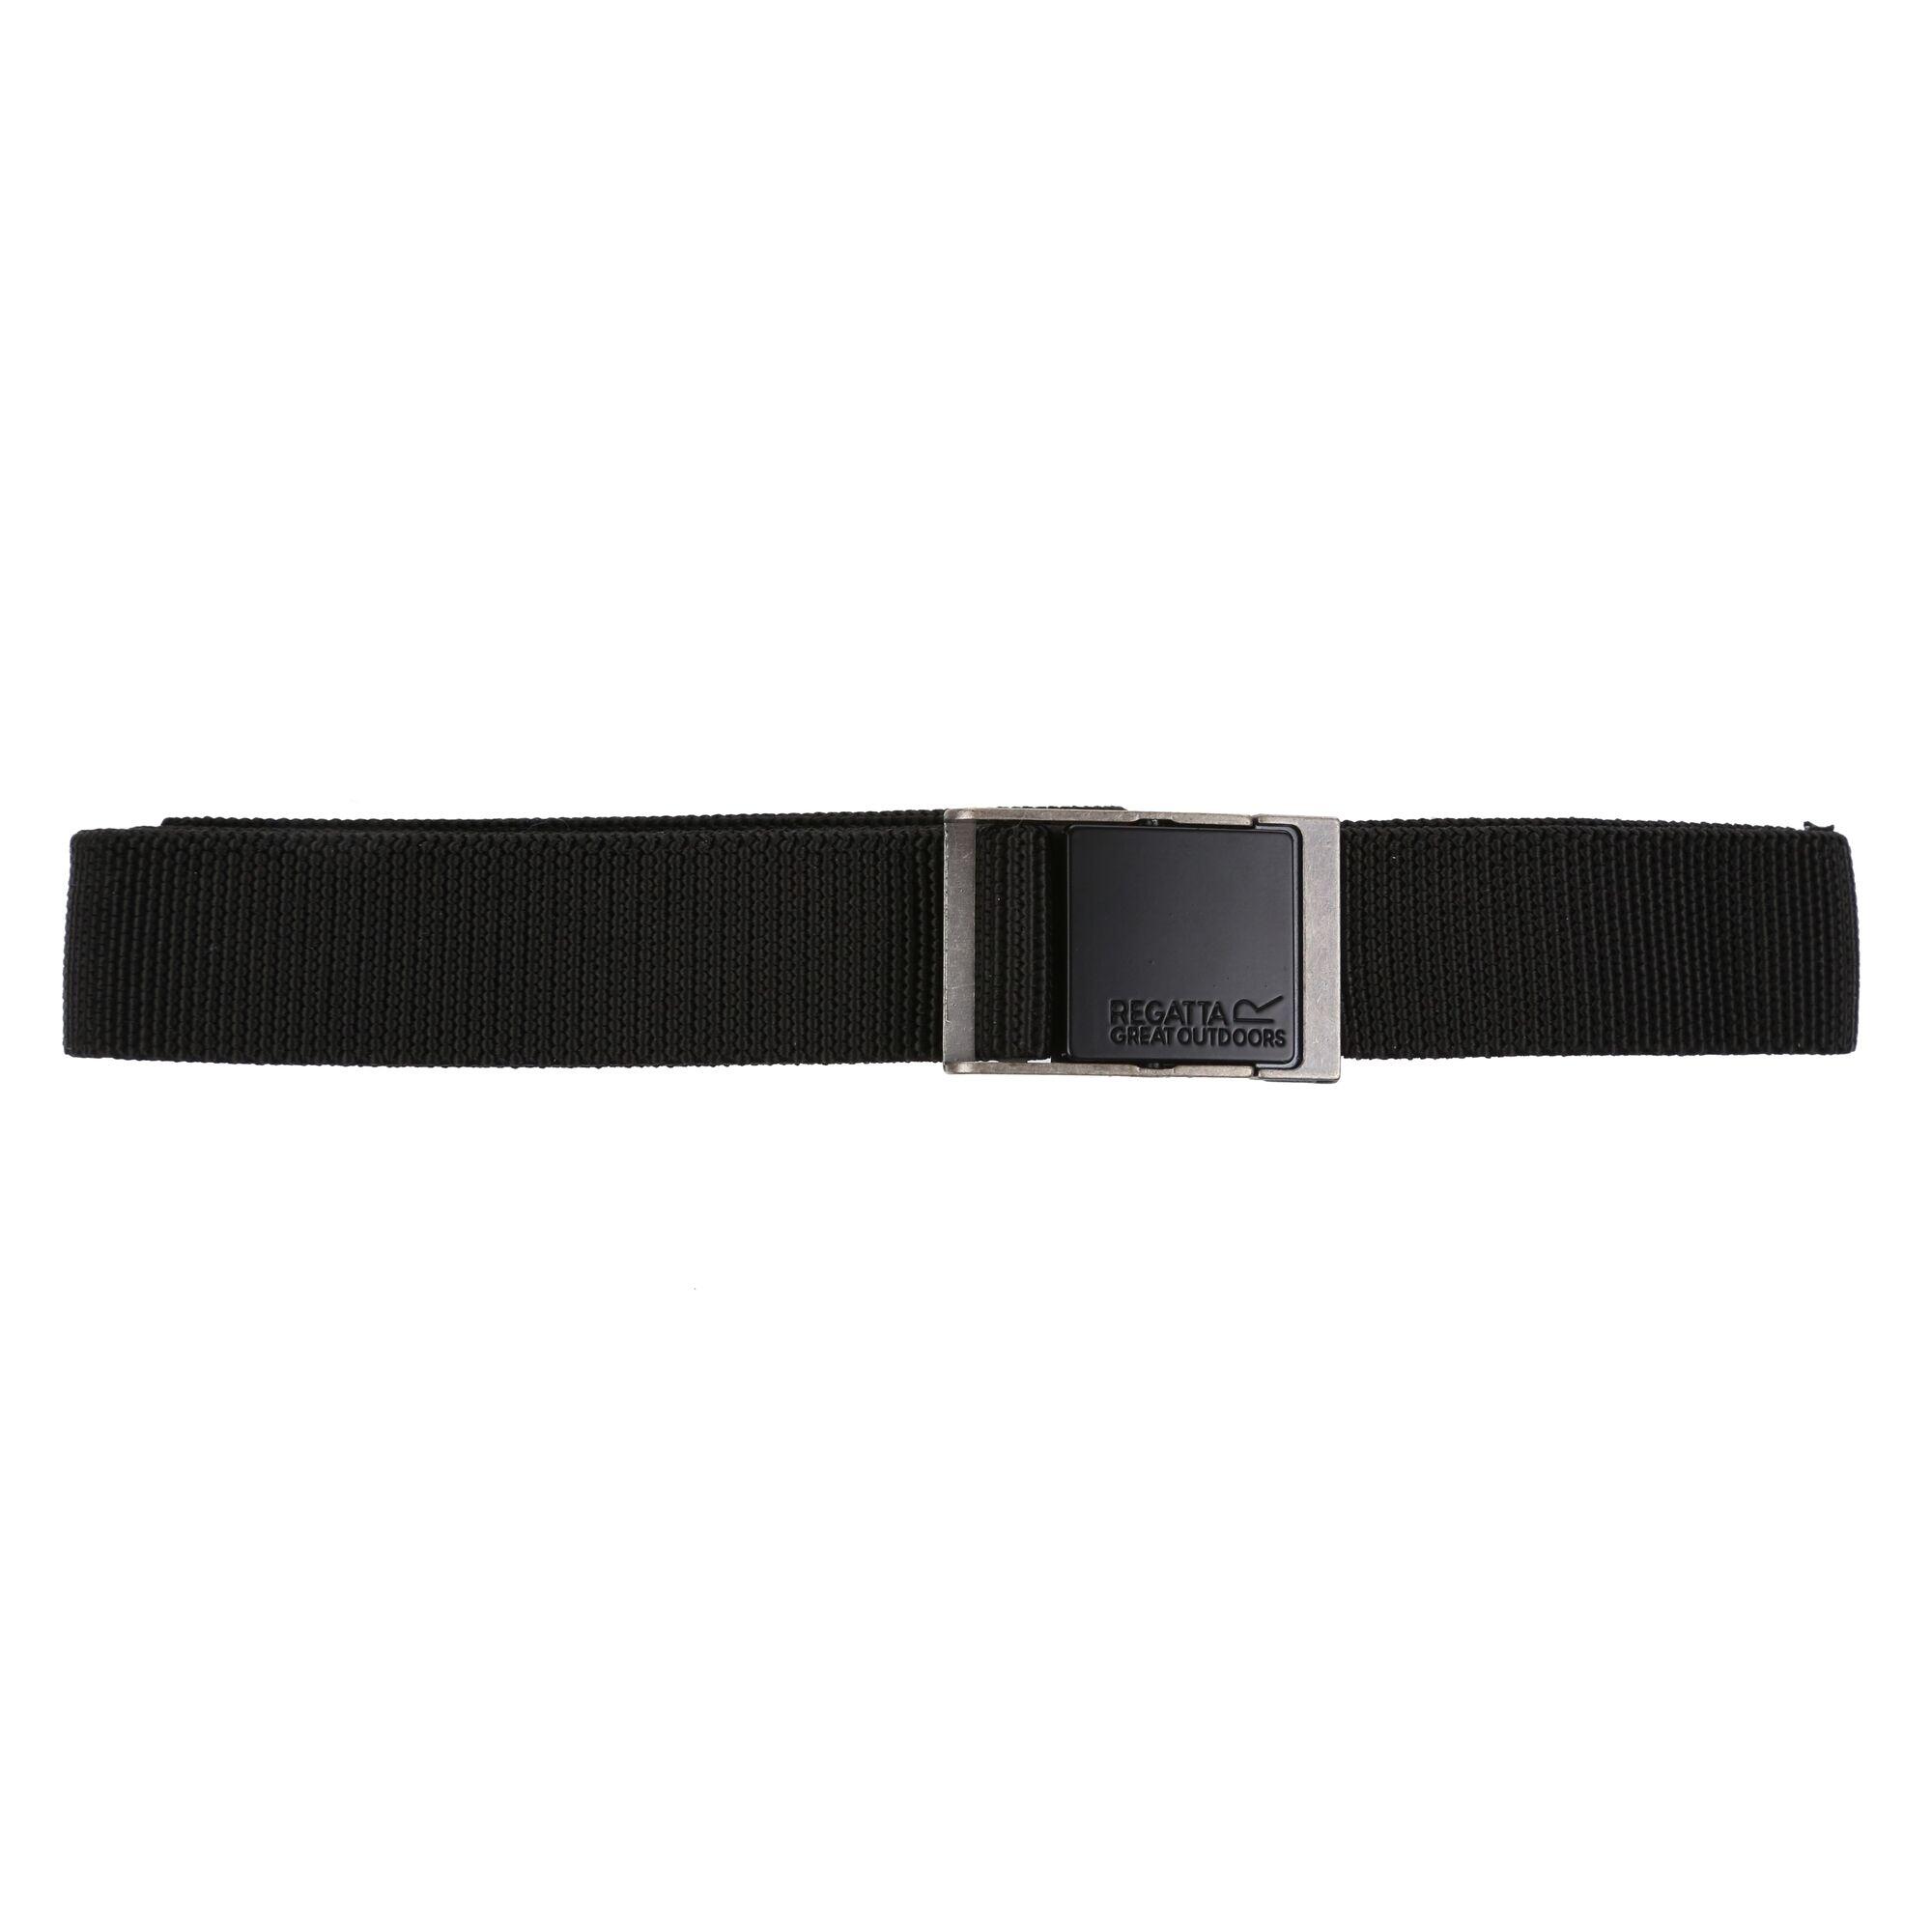 REGATTA Konex III Webbing Belt (Black)